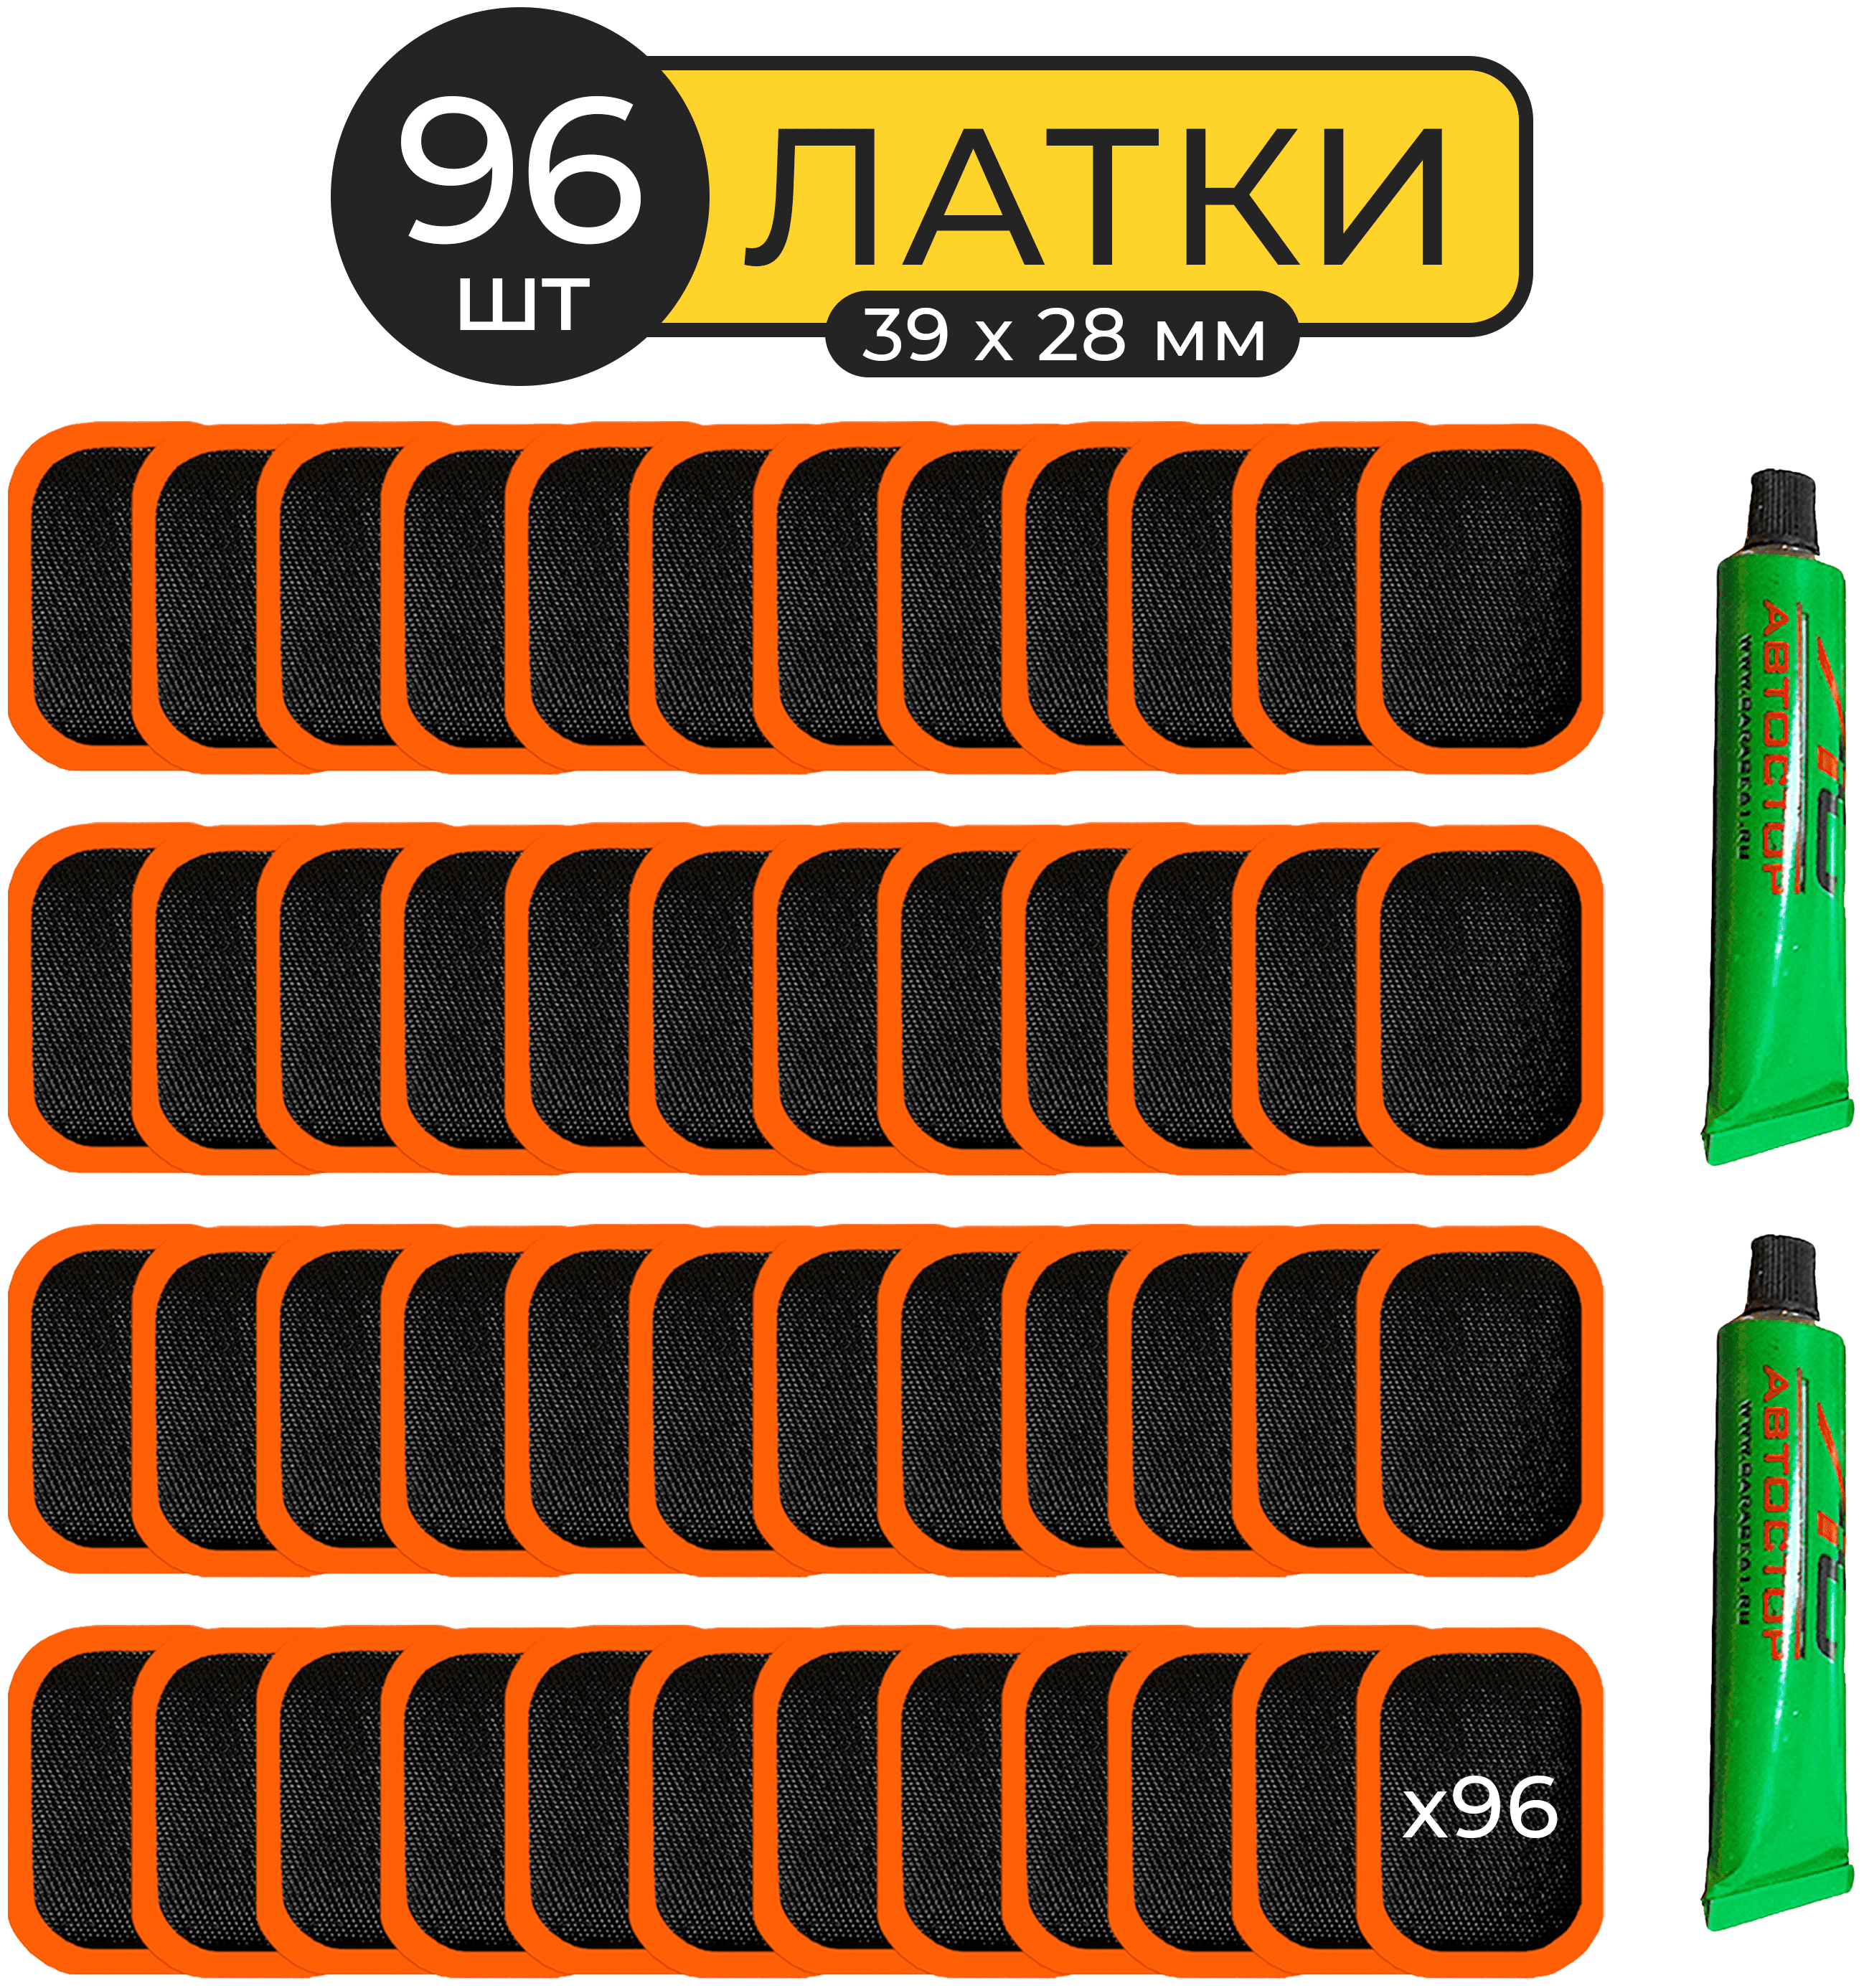 Латки комплект 2 упаковки по 48 шт резиновые для ремонта камер Автостор RS-4802, заплатки прямоугольные 3,9х2,8 см